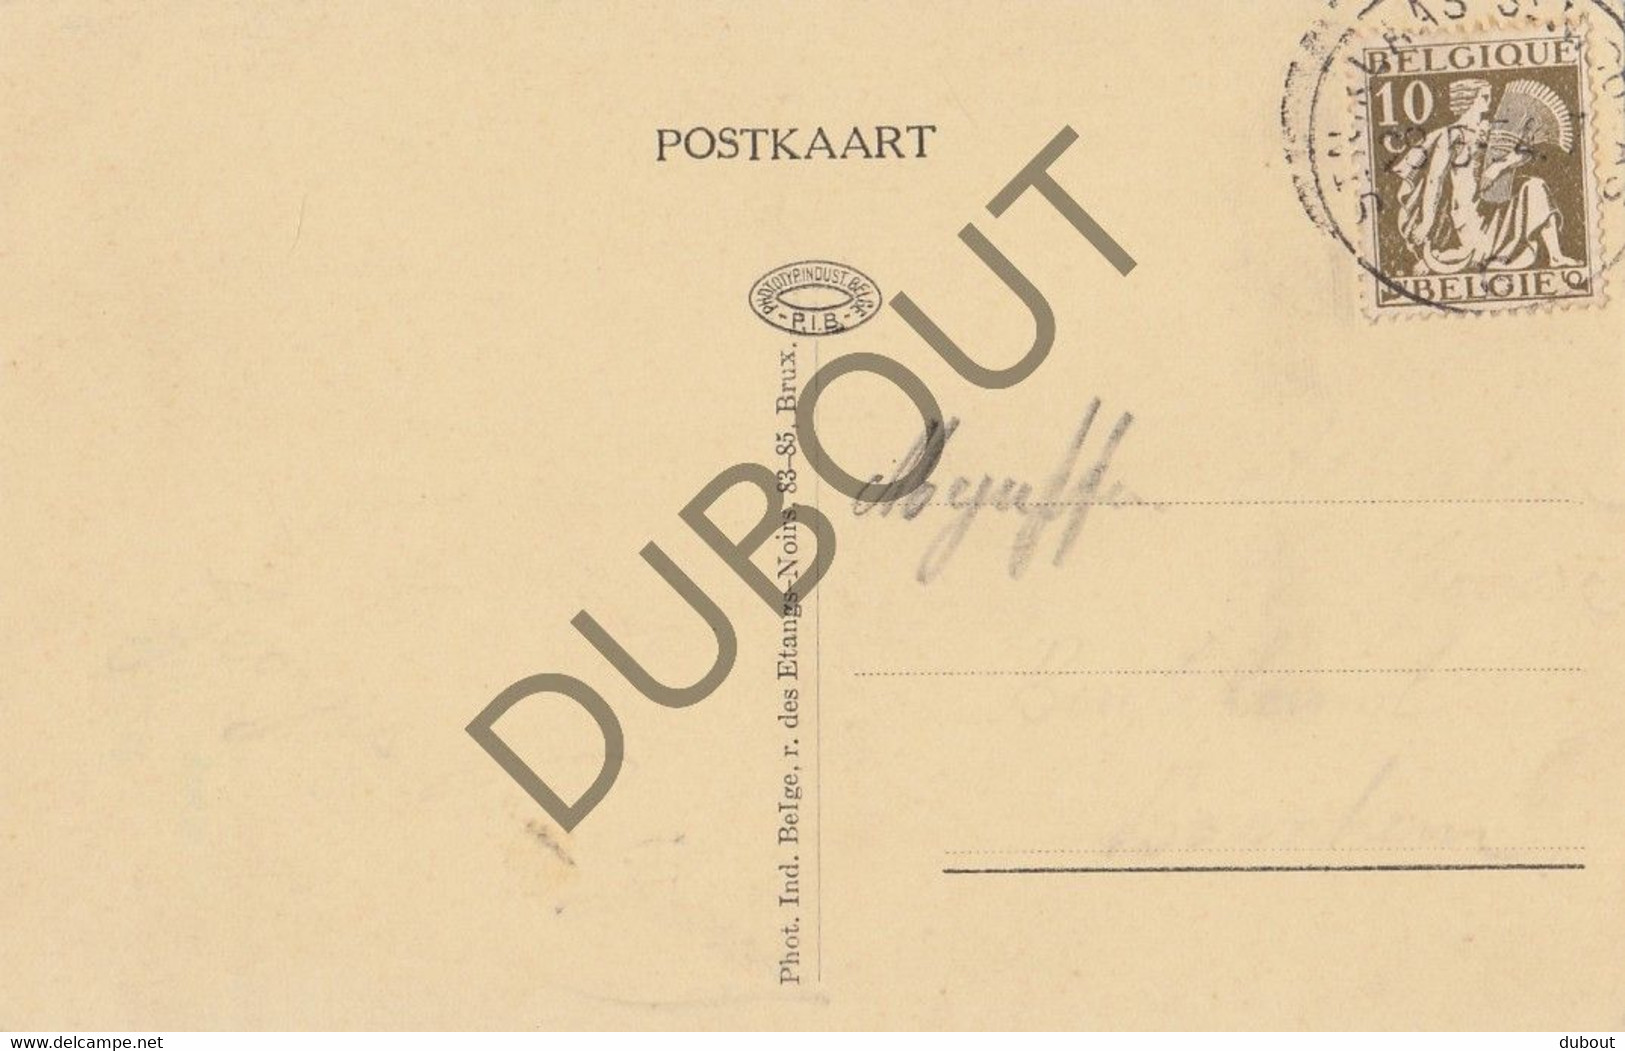 Postkaarte/Carte Postale - MELSELE - Gedenkenis Uit Gaverland (C2723) - Beveren-Waas